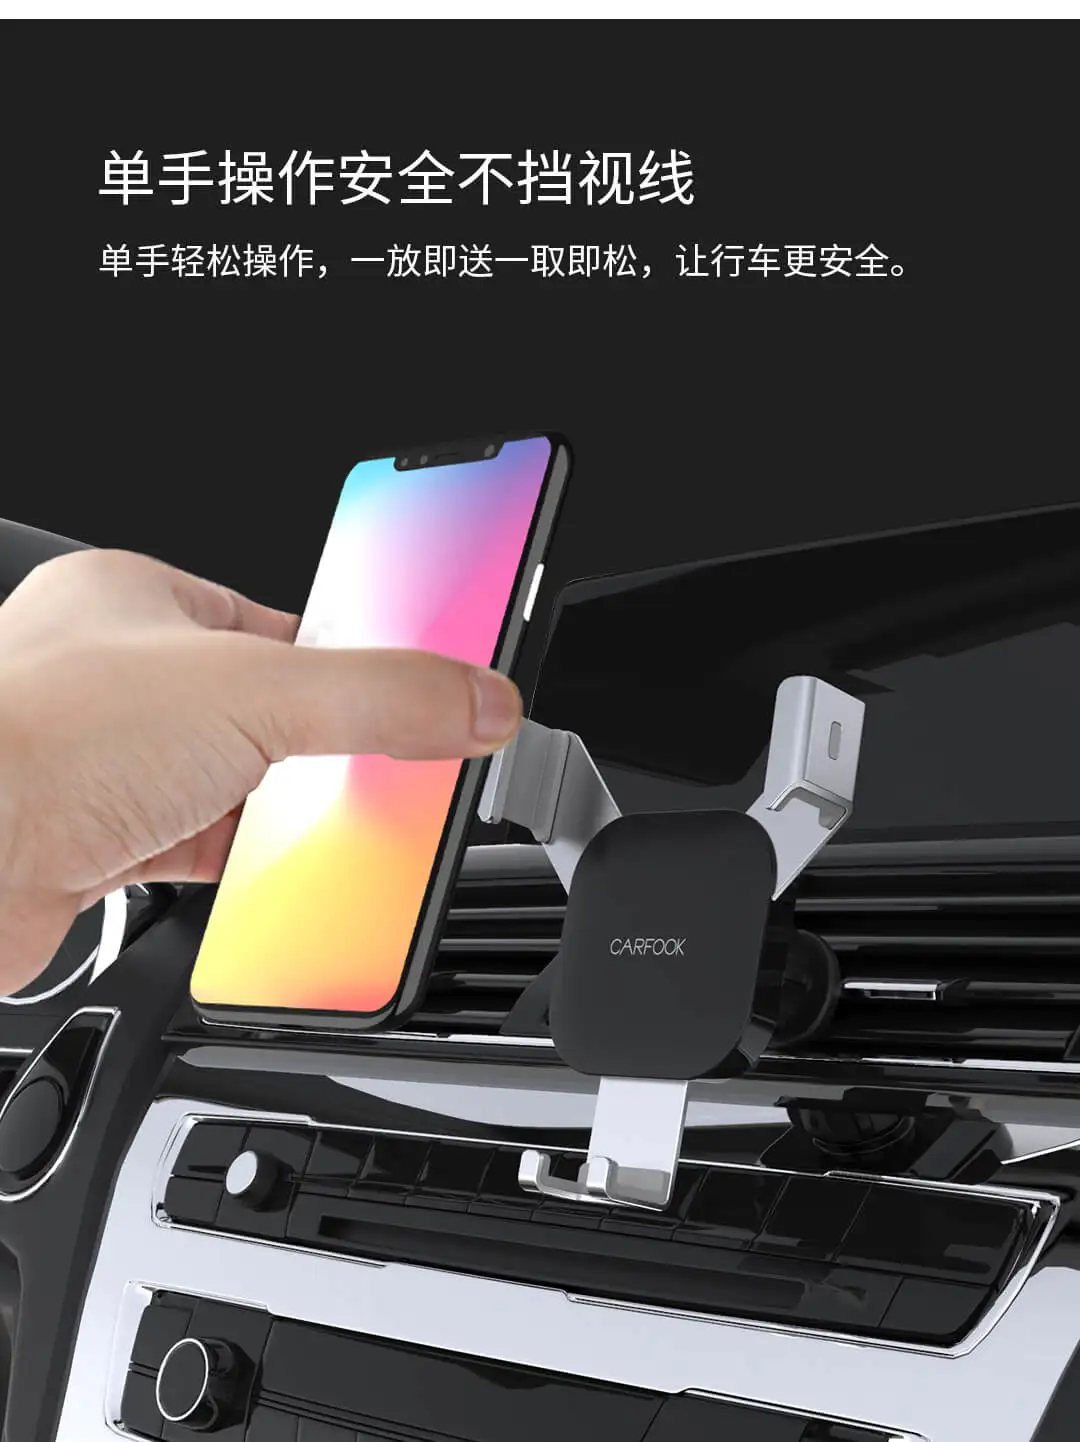 Xiaomi, устанавливаемое на вентиляционное отверстие в салоне автомобиля Автомобильный держатель для телефона на магните с креплением 4,7-6,5 дюймов регулируемый угол обзора держатель мобильного телефона для iPhone XS/XR/iPhone X/8/7/6 huawei